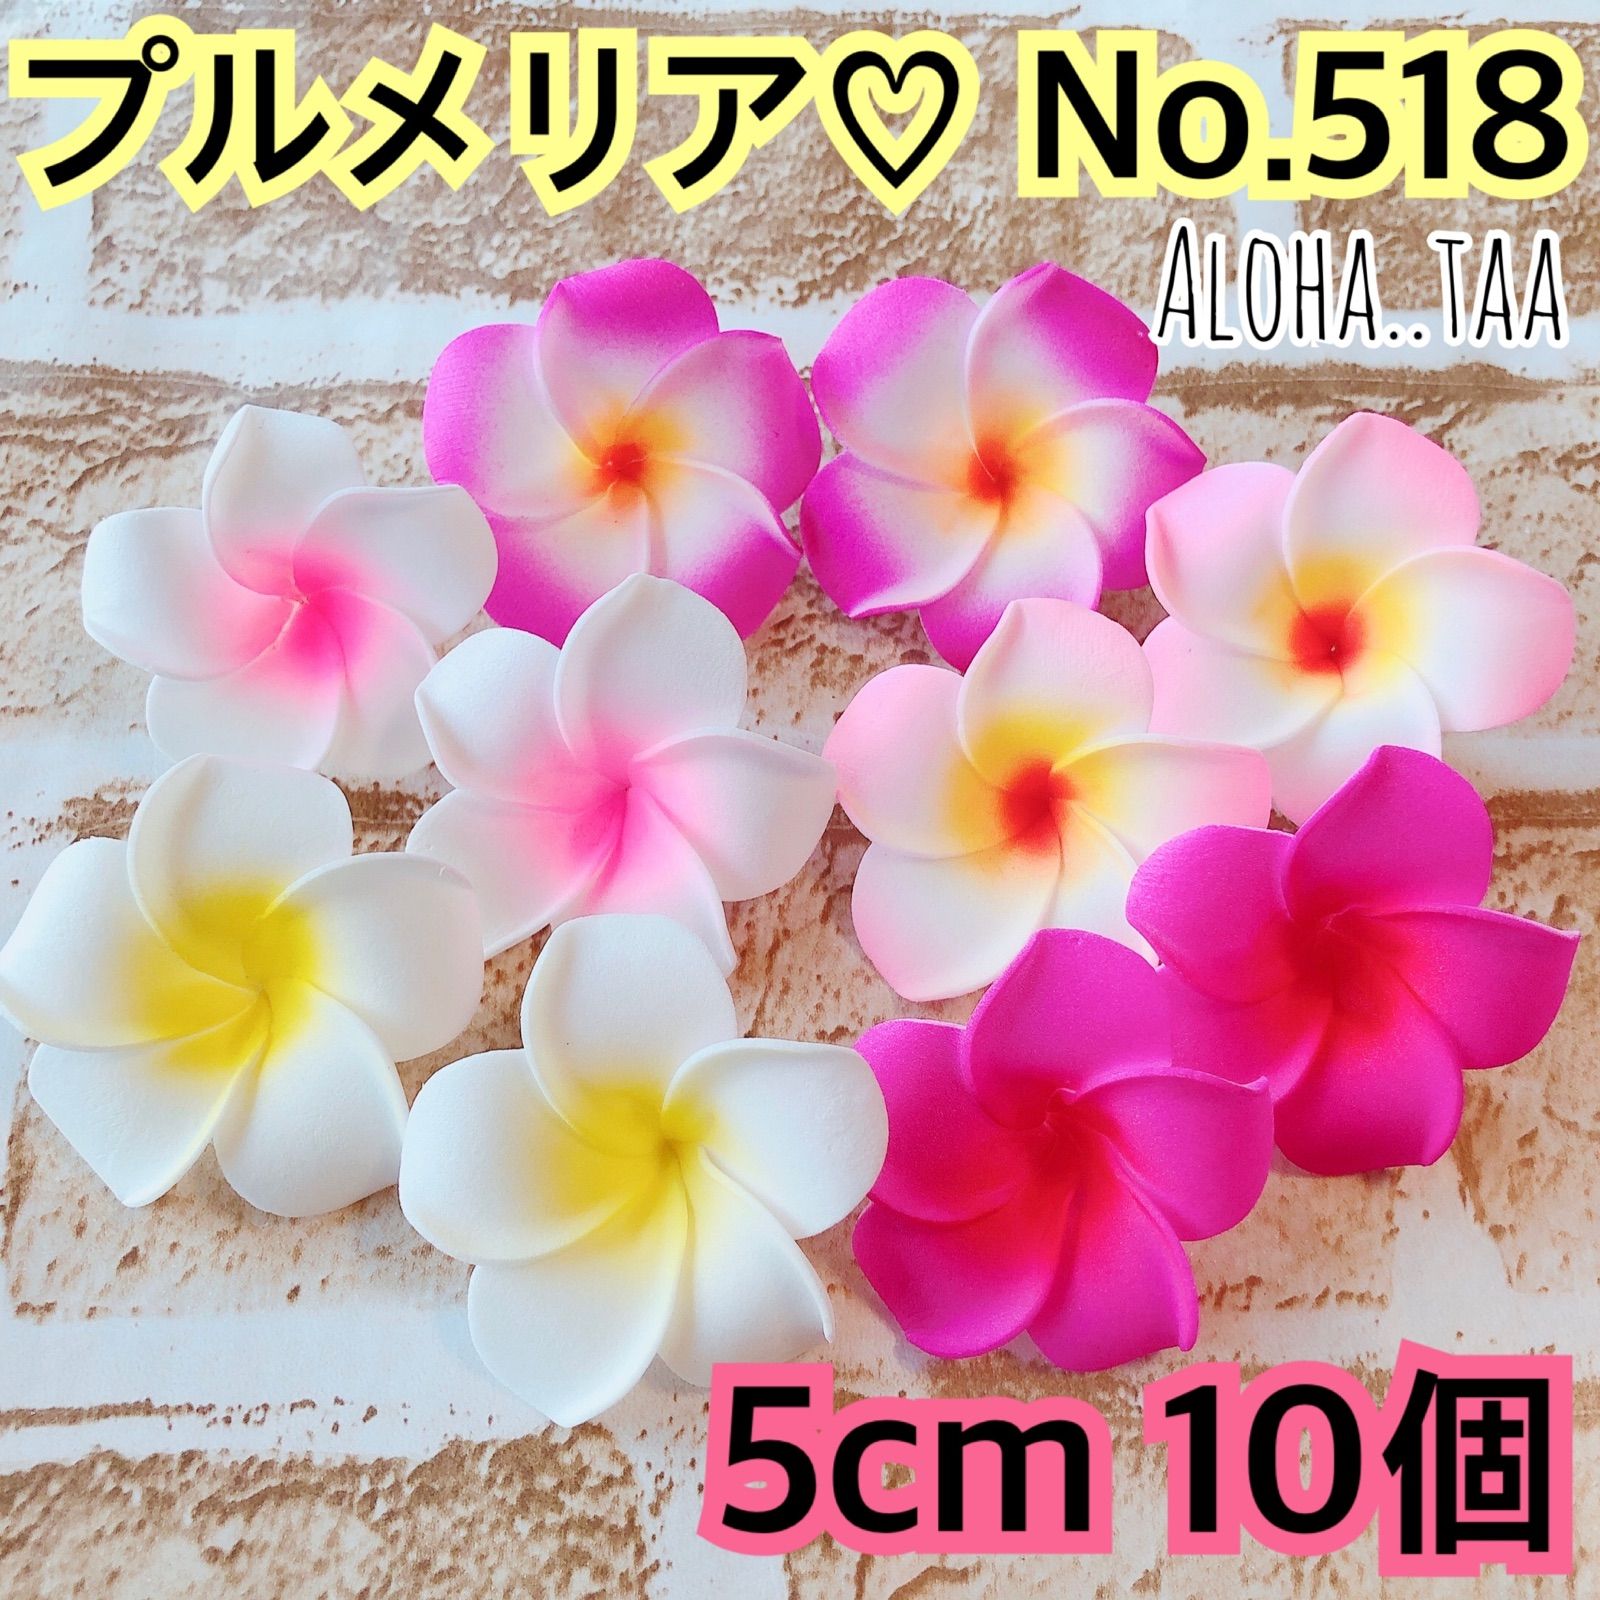 プルメリア 造花 ♡ 約5cm 10個セット ♡ No.518 - メルカリ